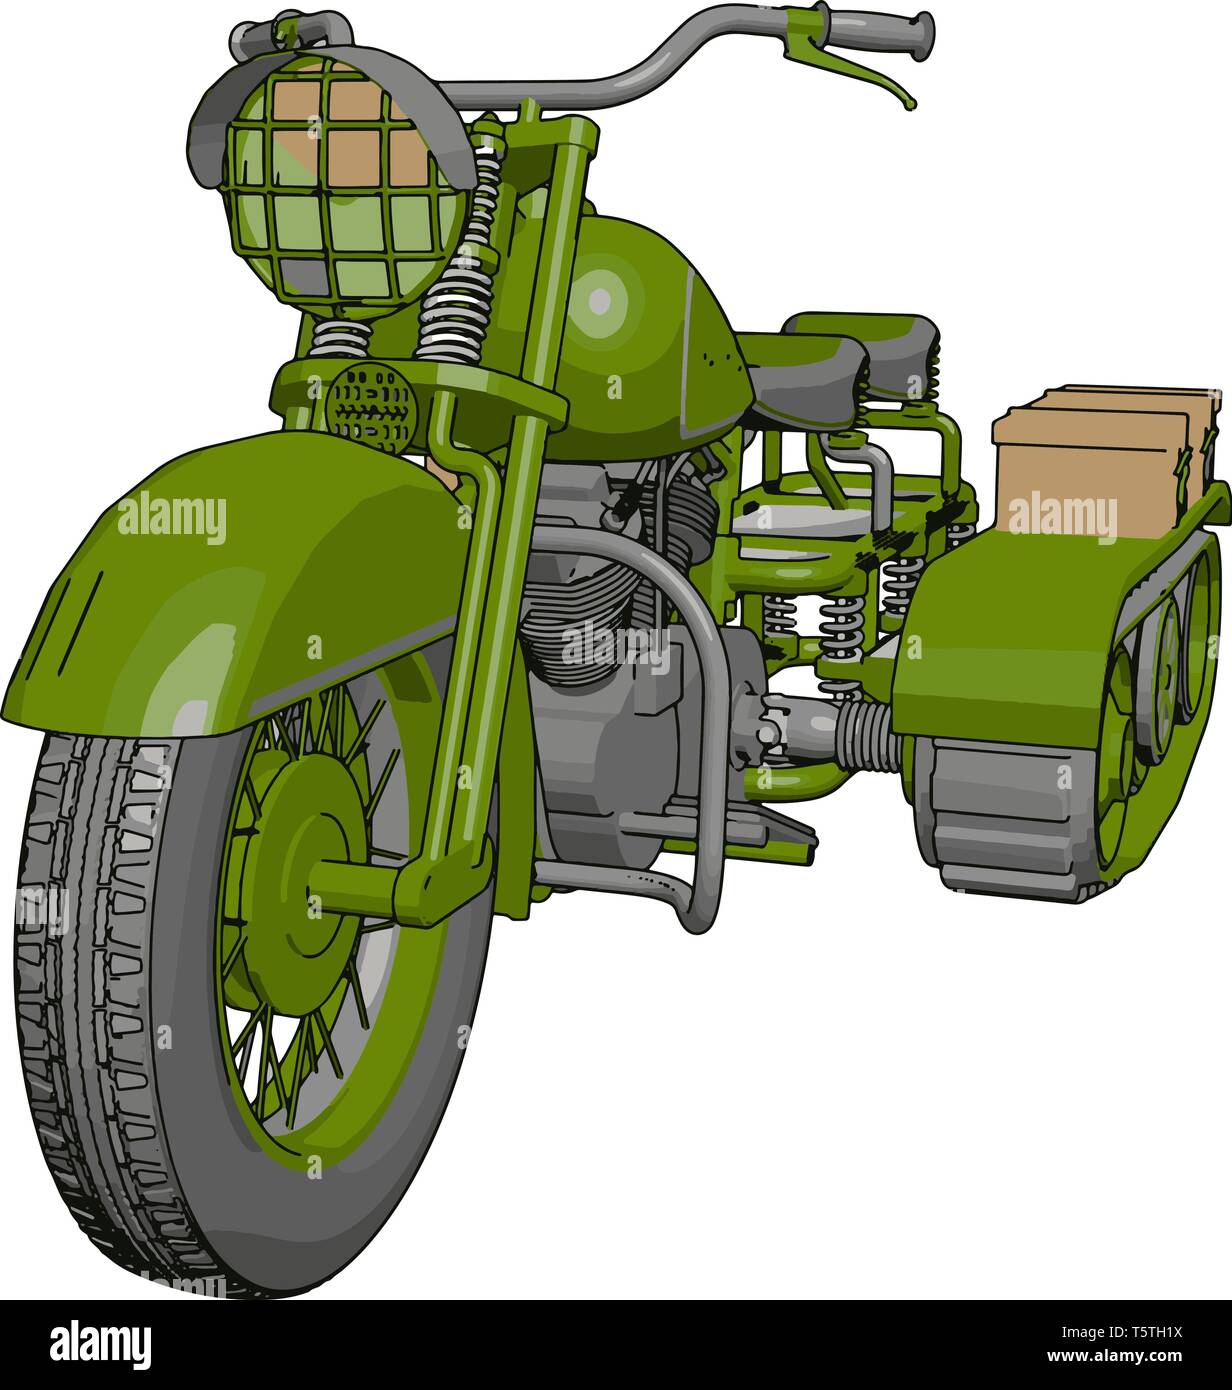 Illustration 3D de vecteur sur fond blanc d'une moto militaire à chenilles Illustration de Vecteur